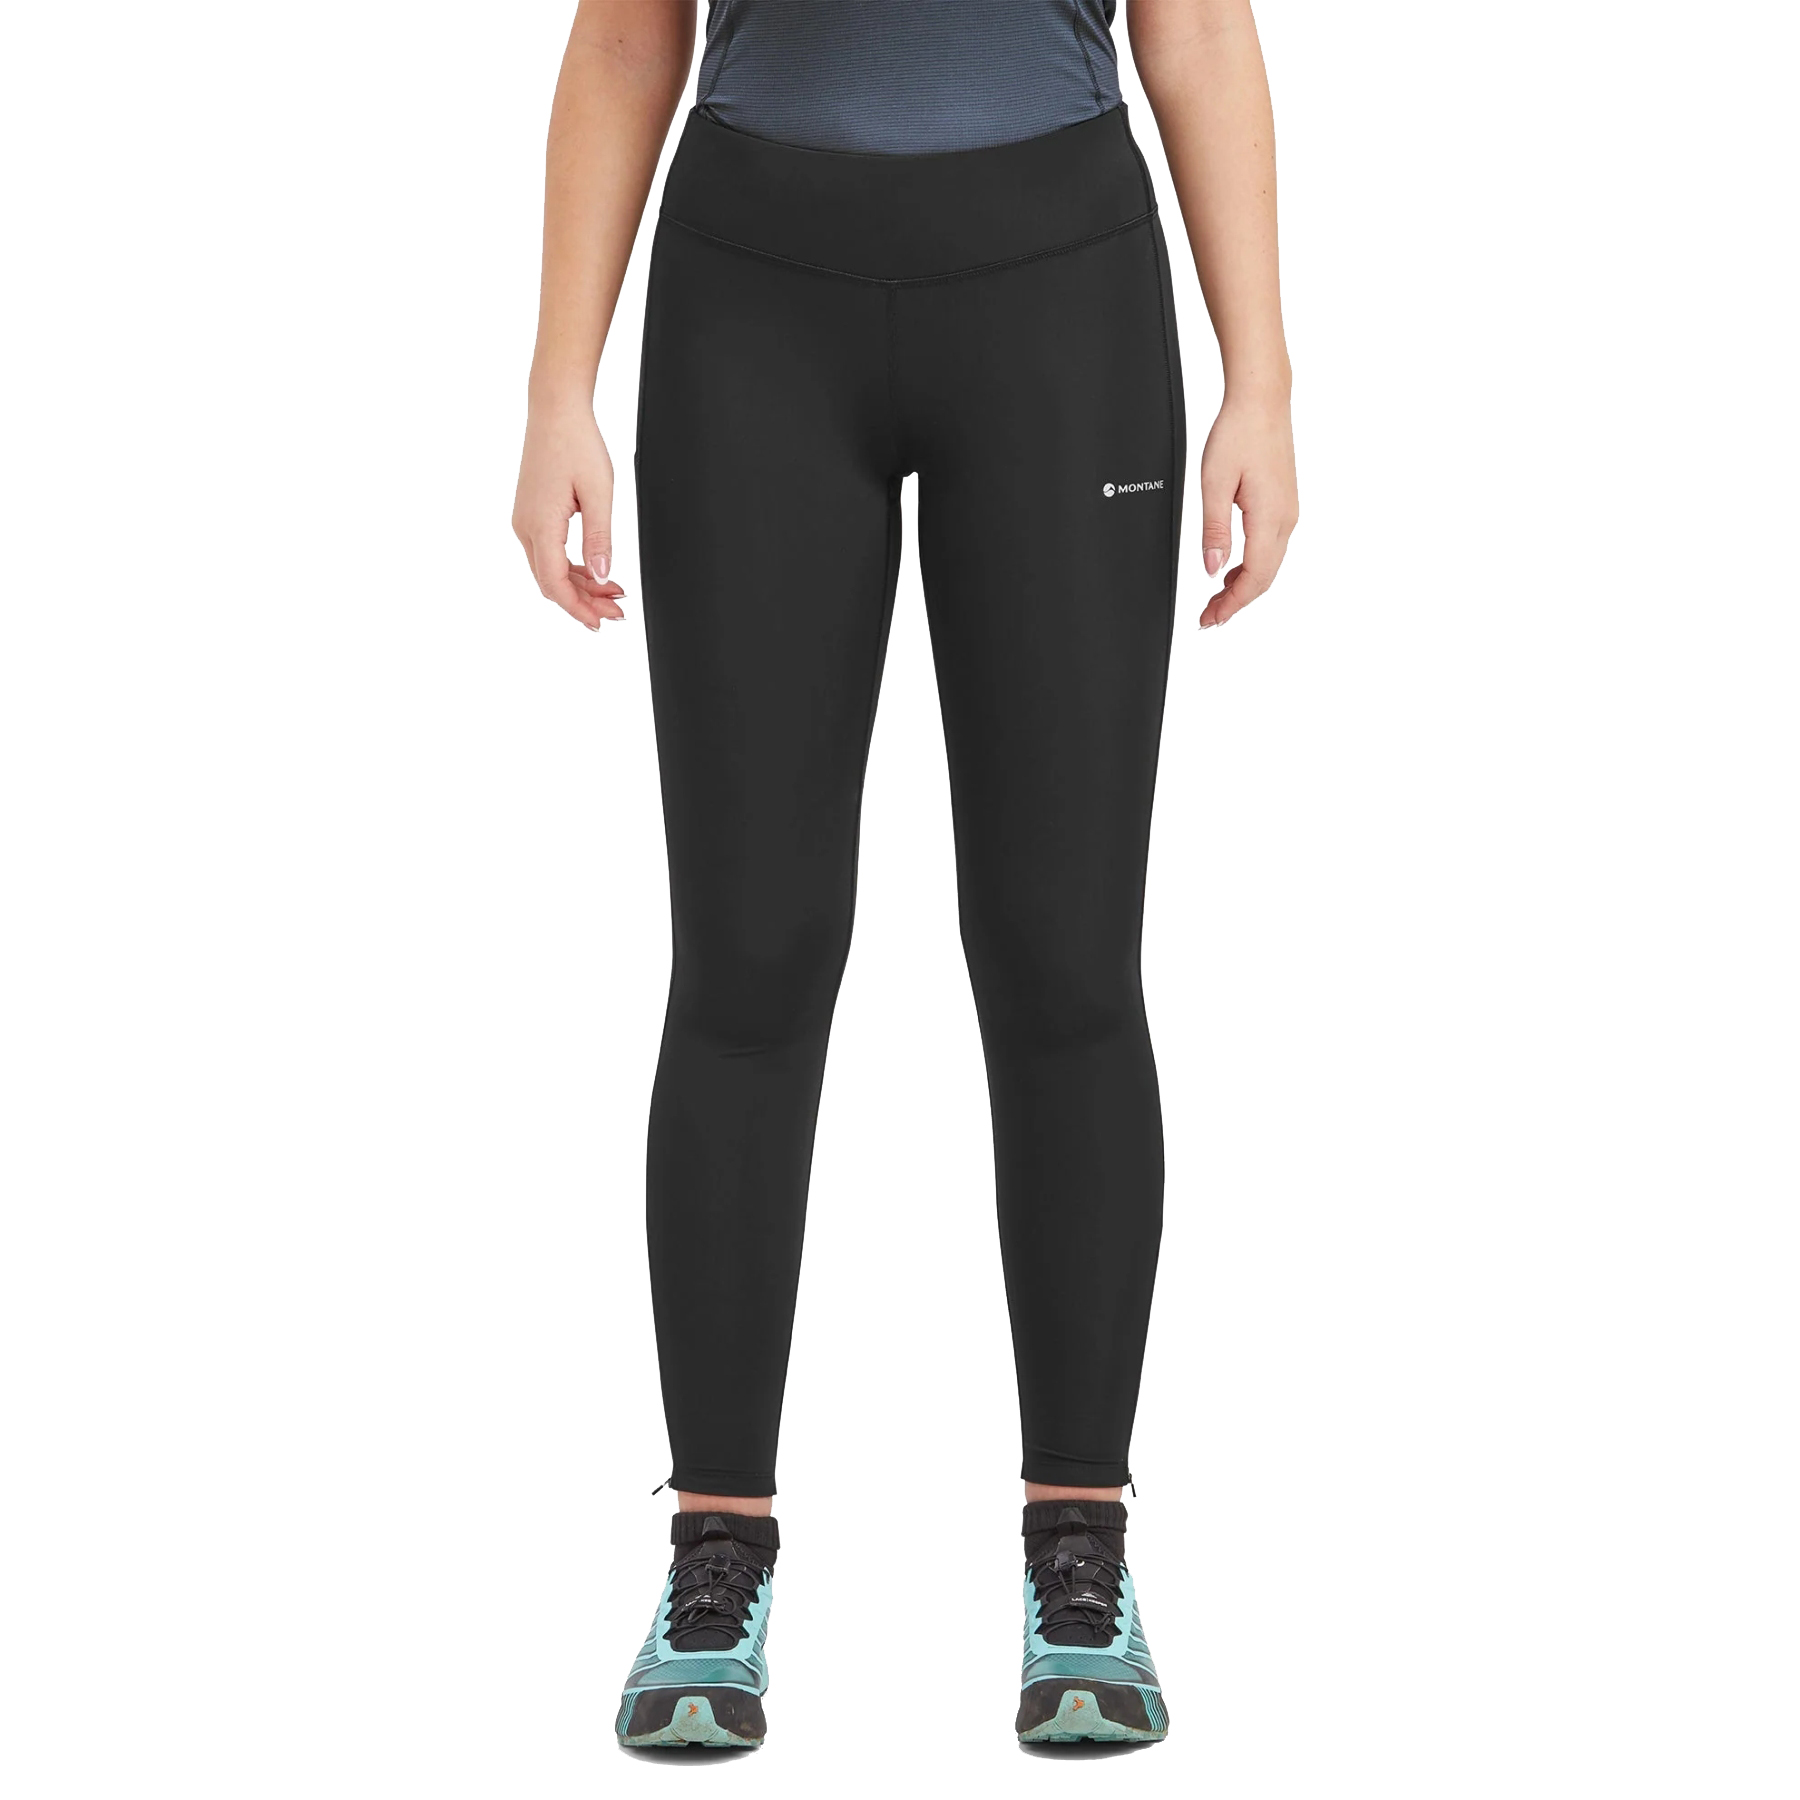 Produktbild von Montane Slipstream Damen Trail Running Tights - Regular - schwarz